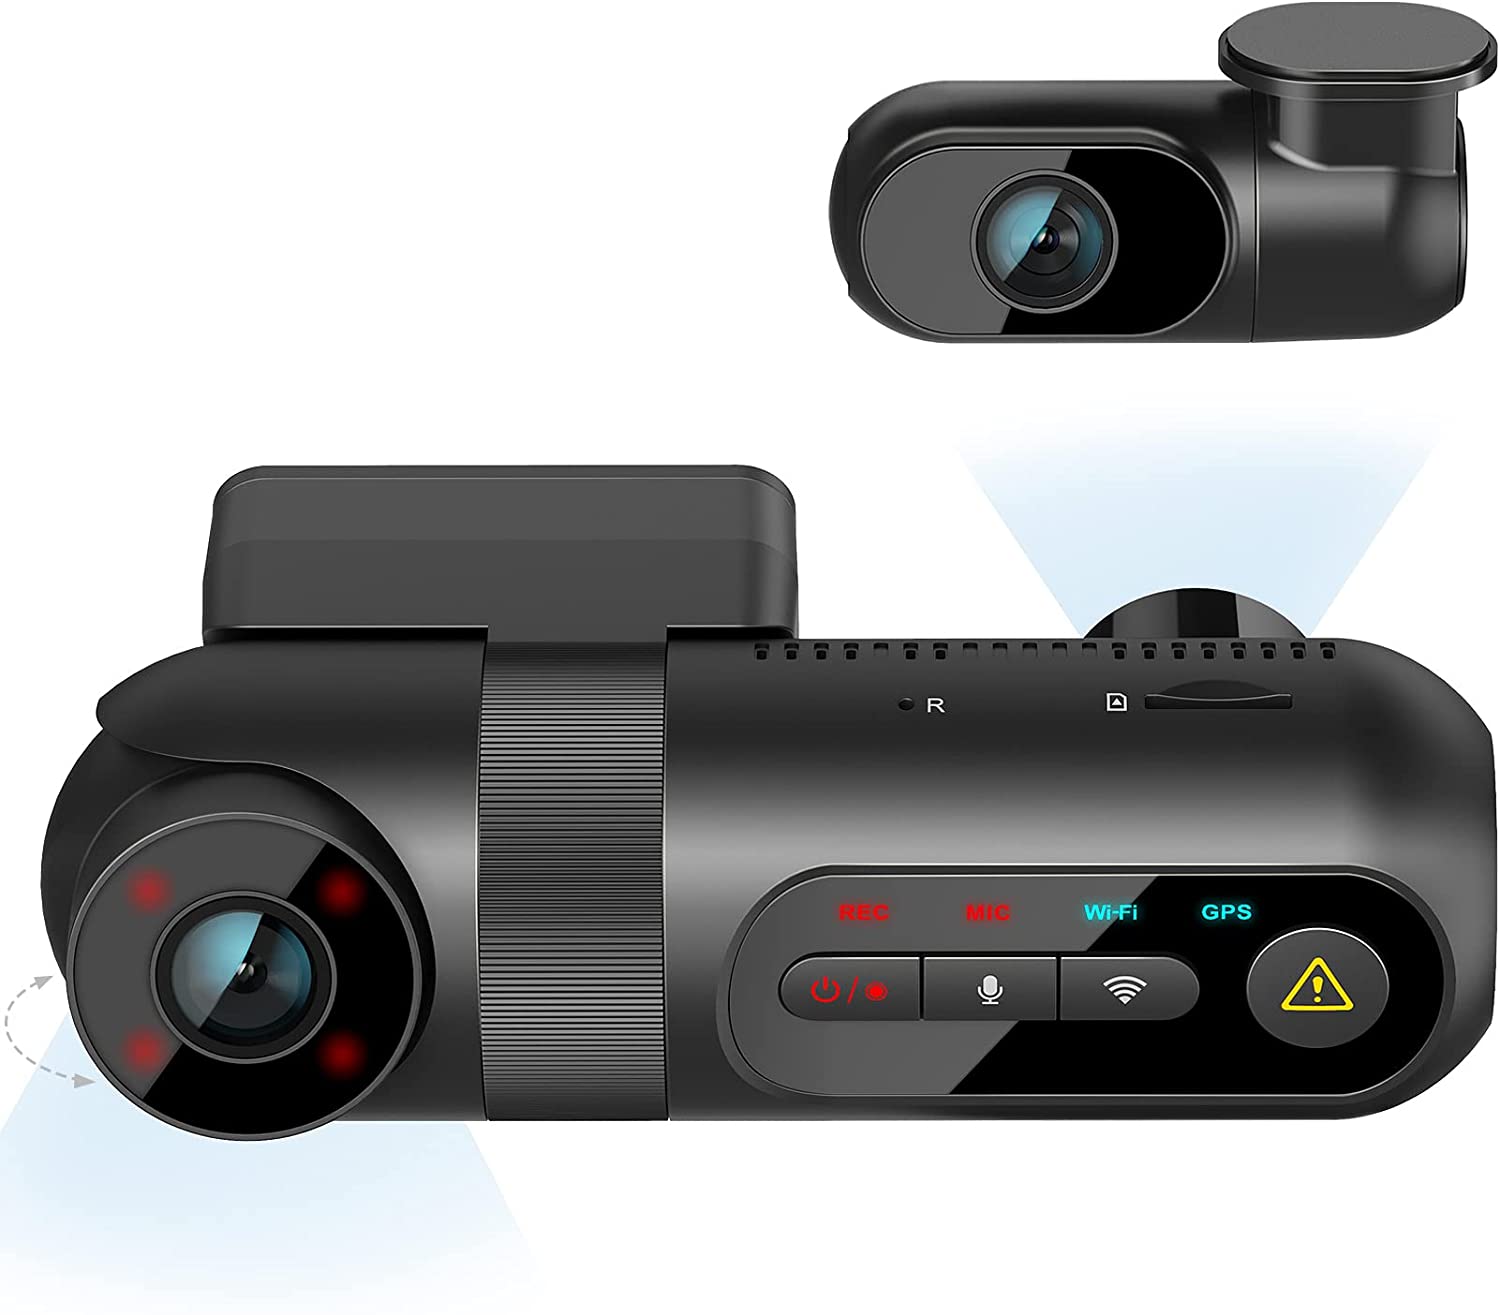 Shop Vantrue Element 3 (E3) Compact 3CH Triple-Lens Dash Cam